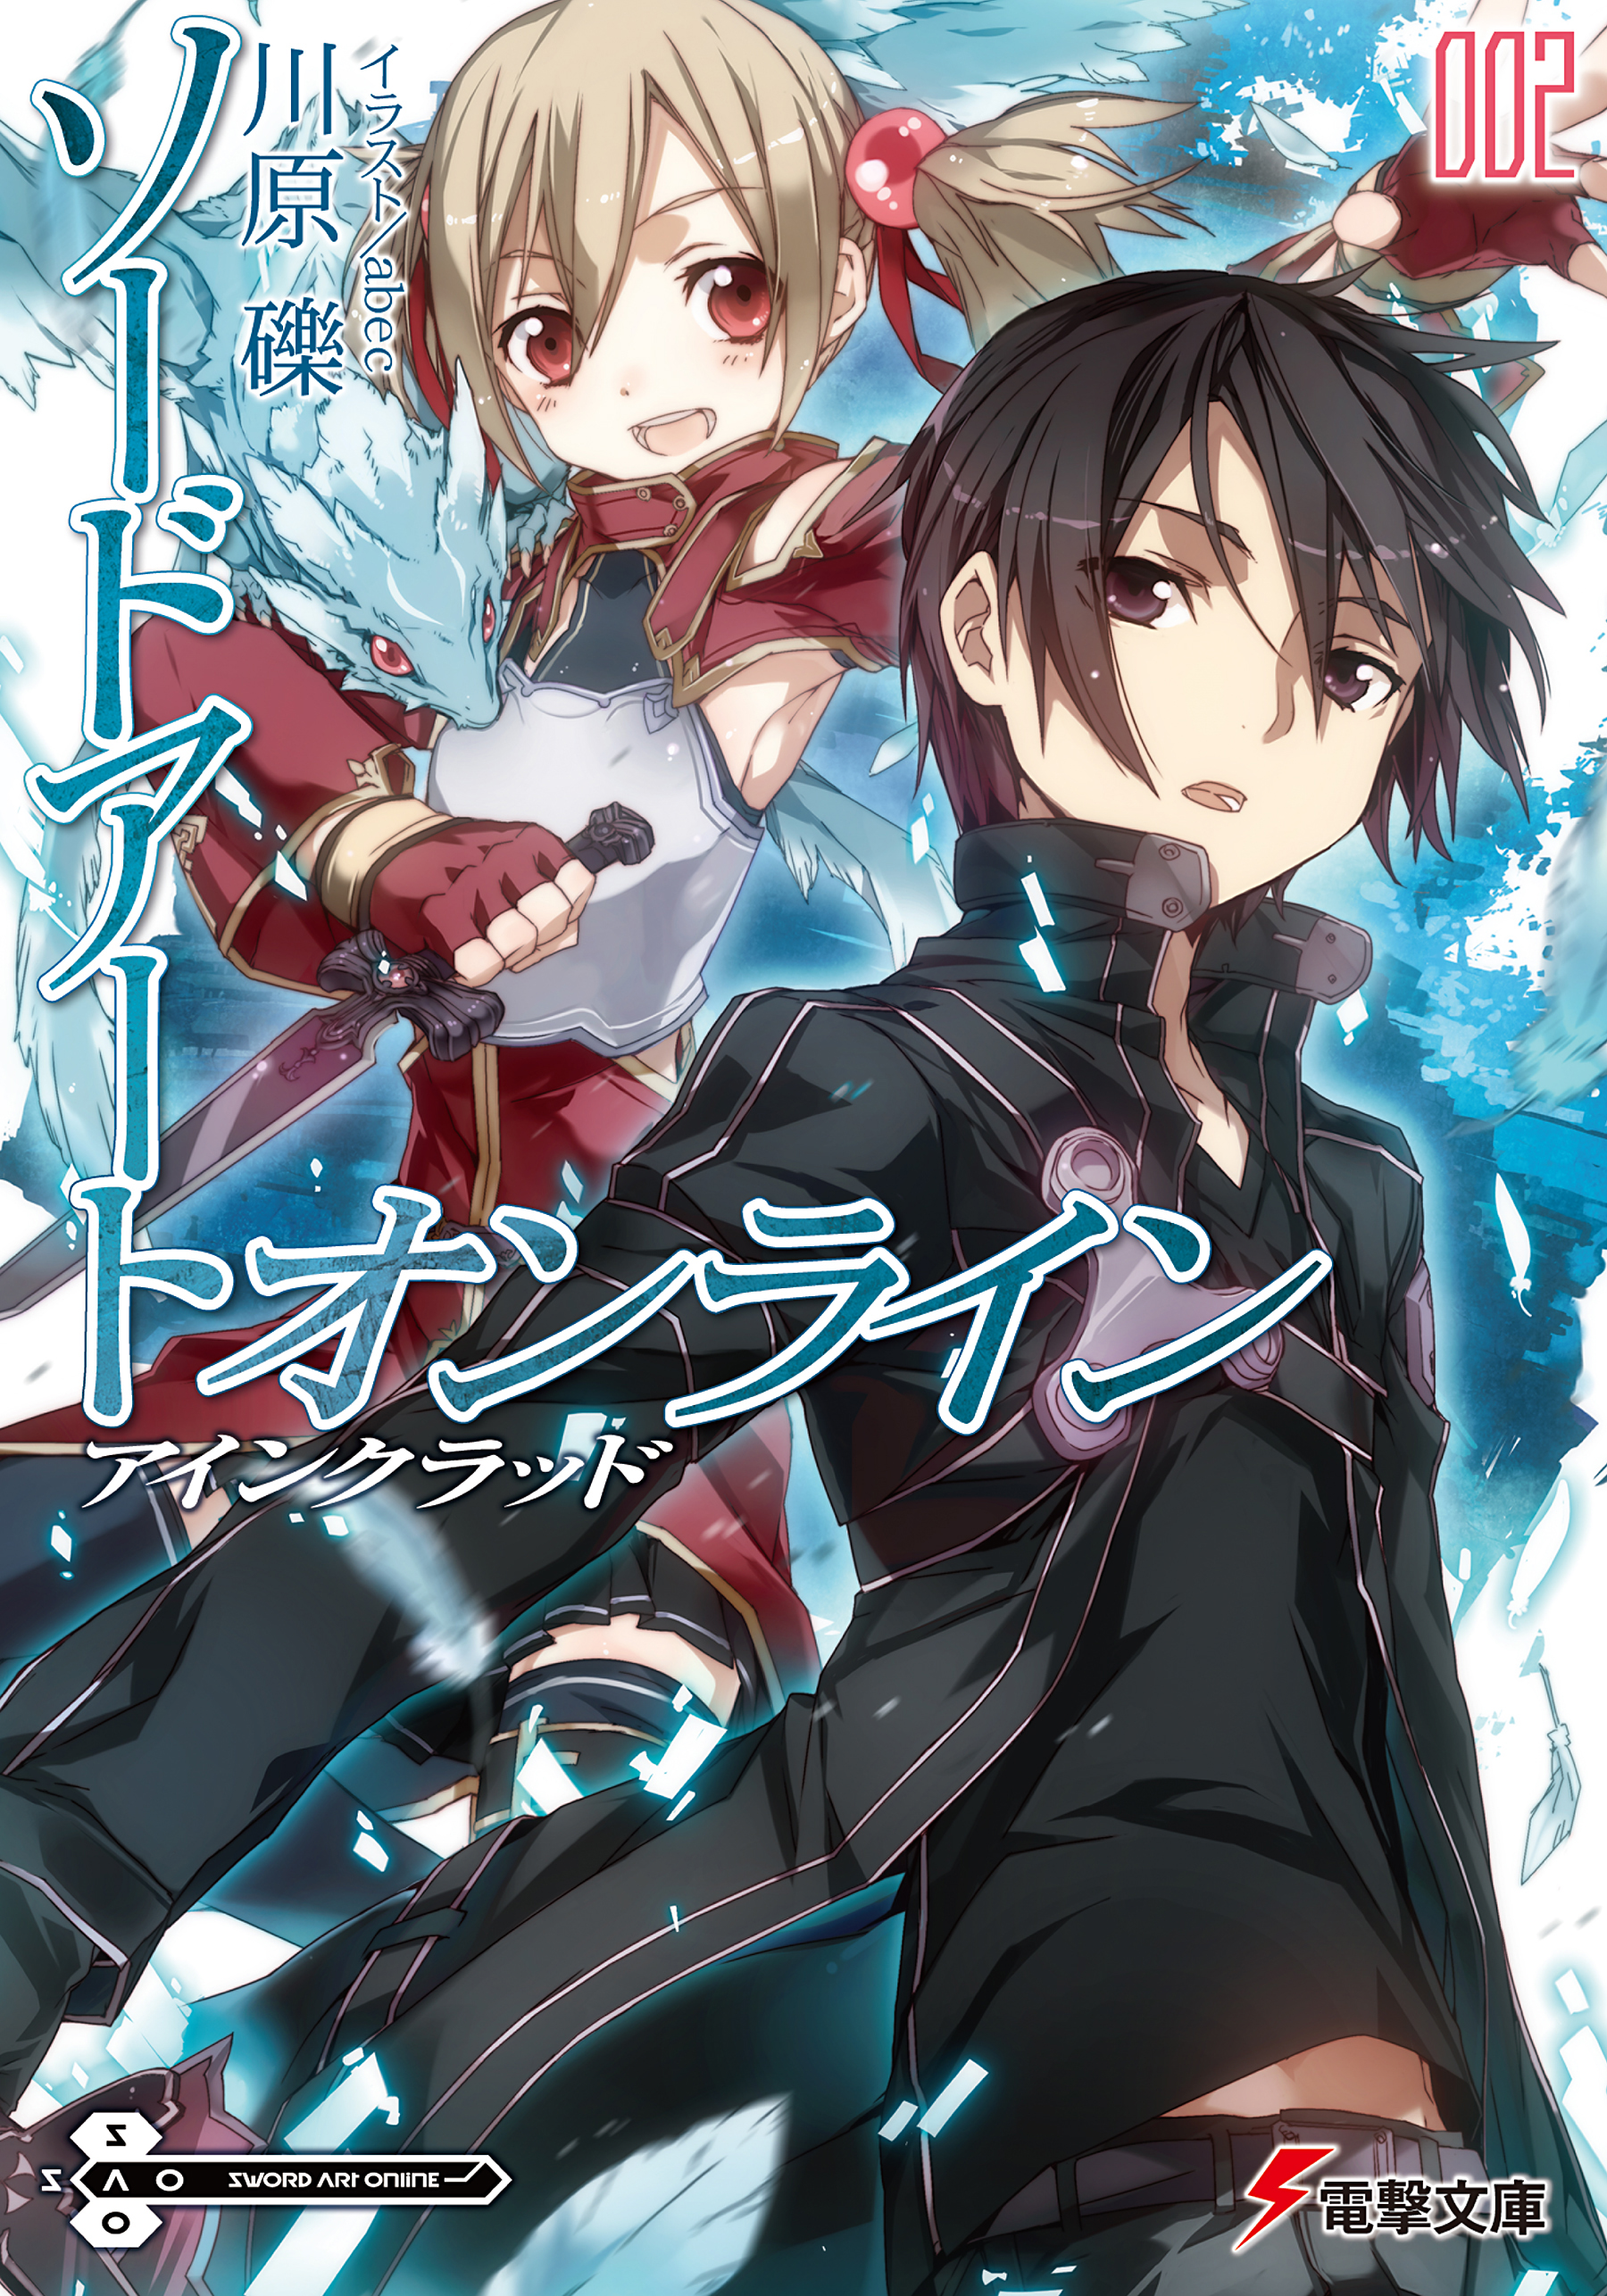 Sword Art Online Novel 02 PDF